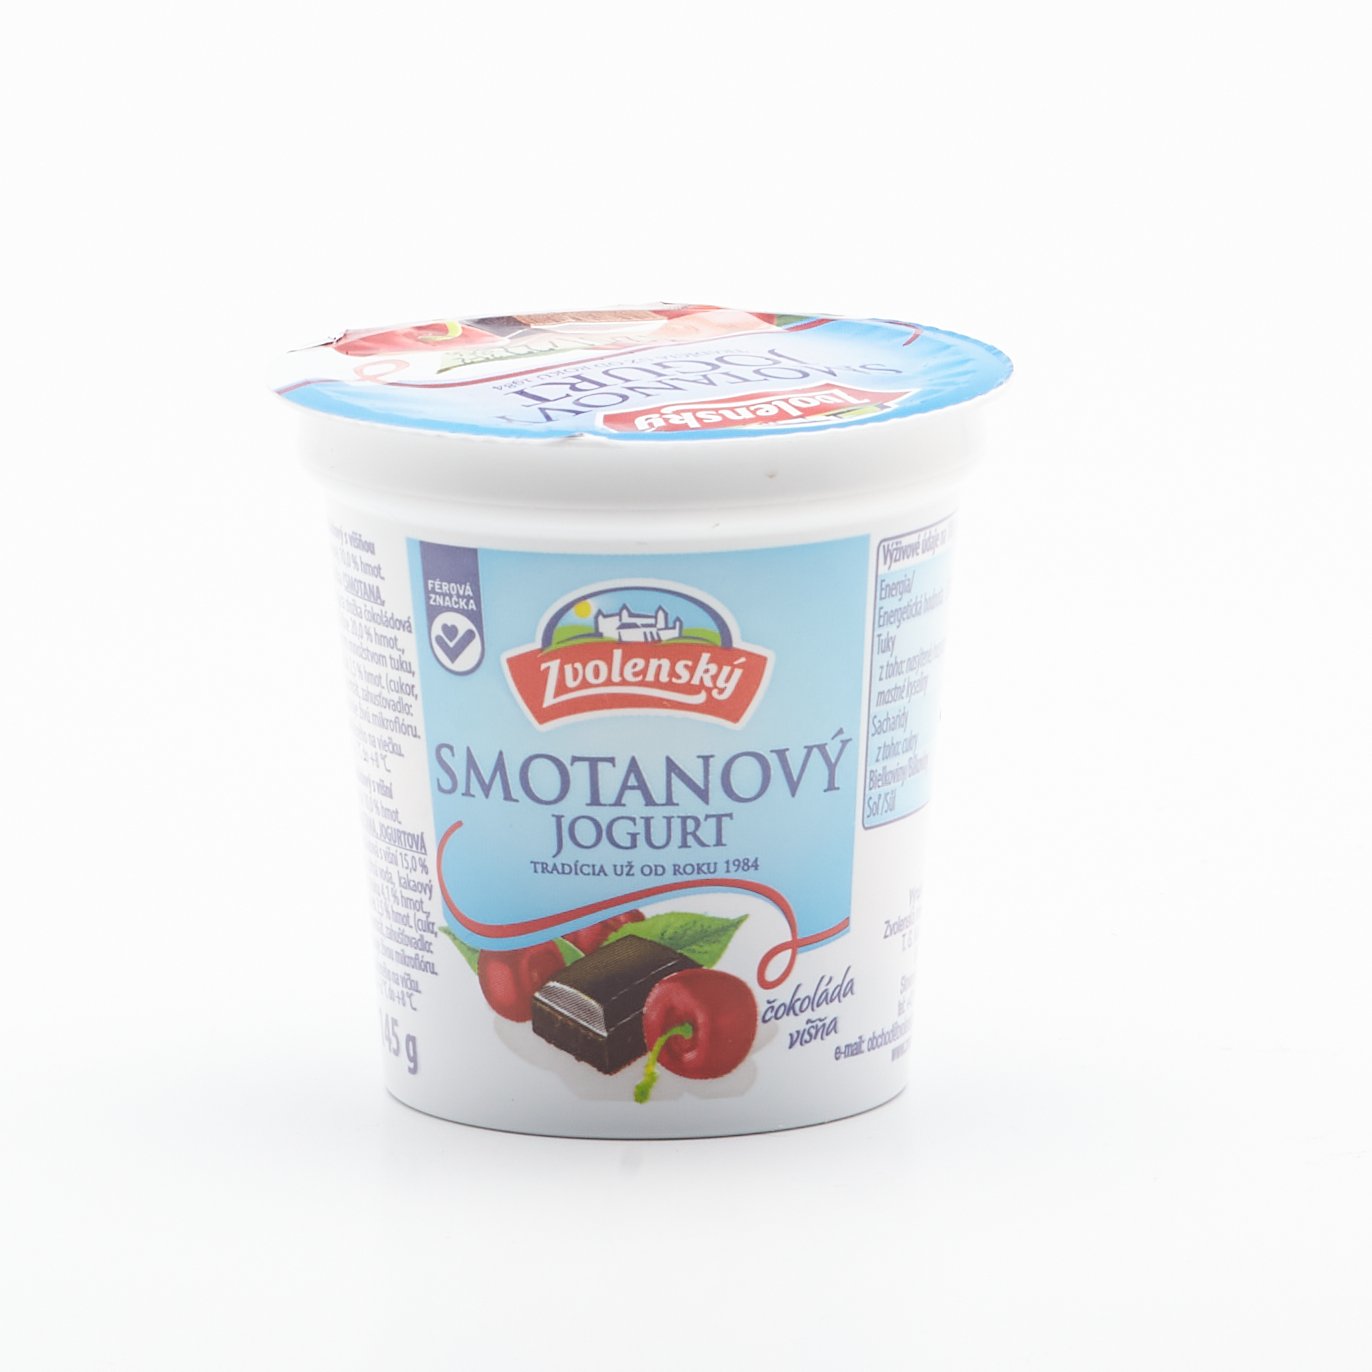 Zvolenský smotanový jogurt višňa 145g